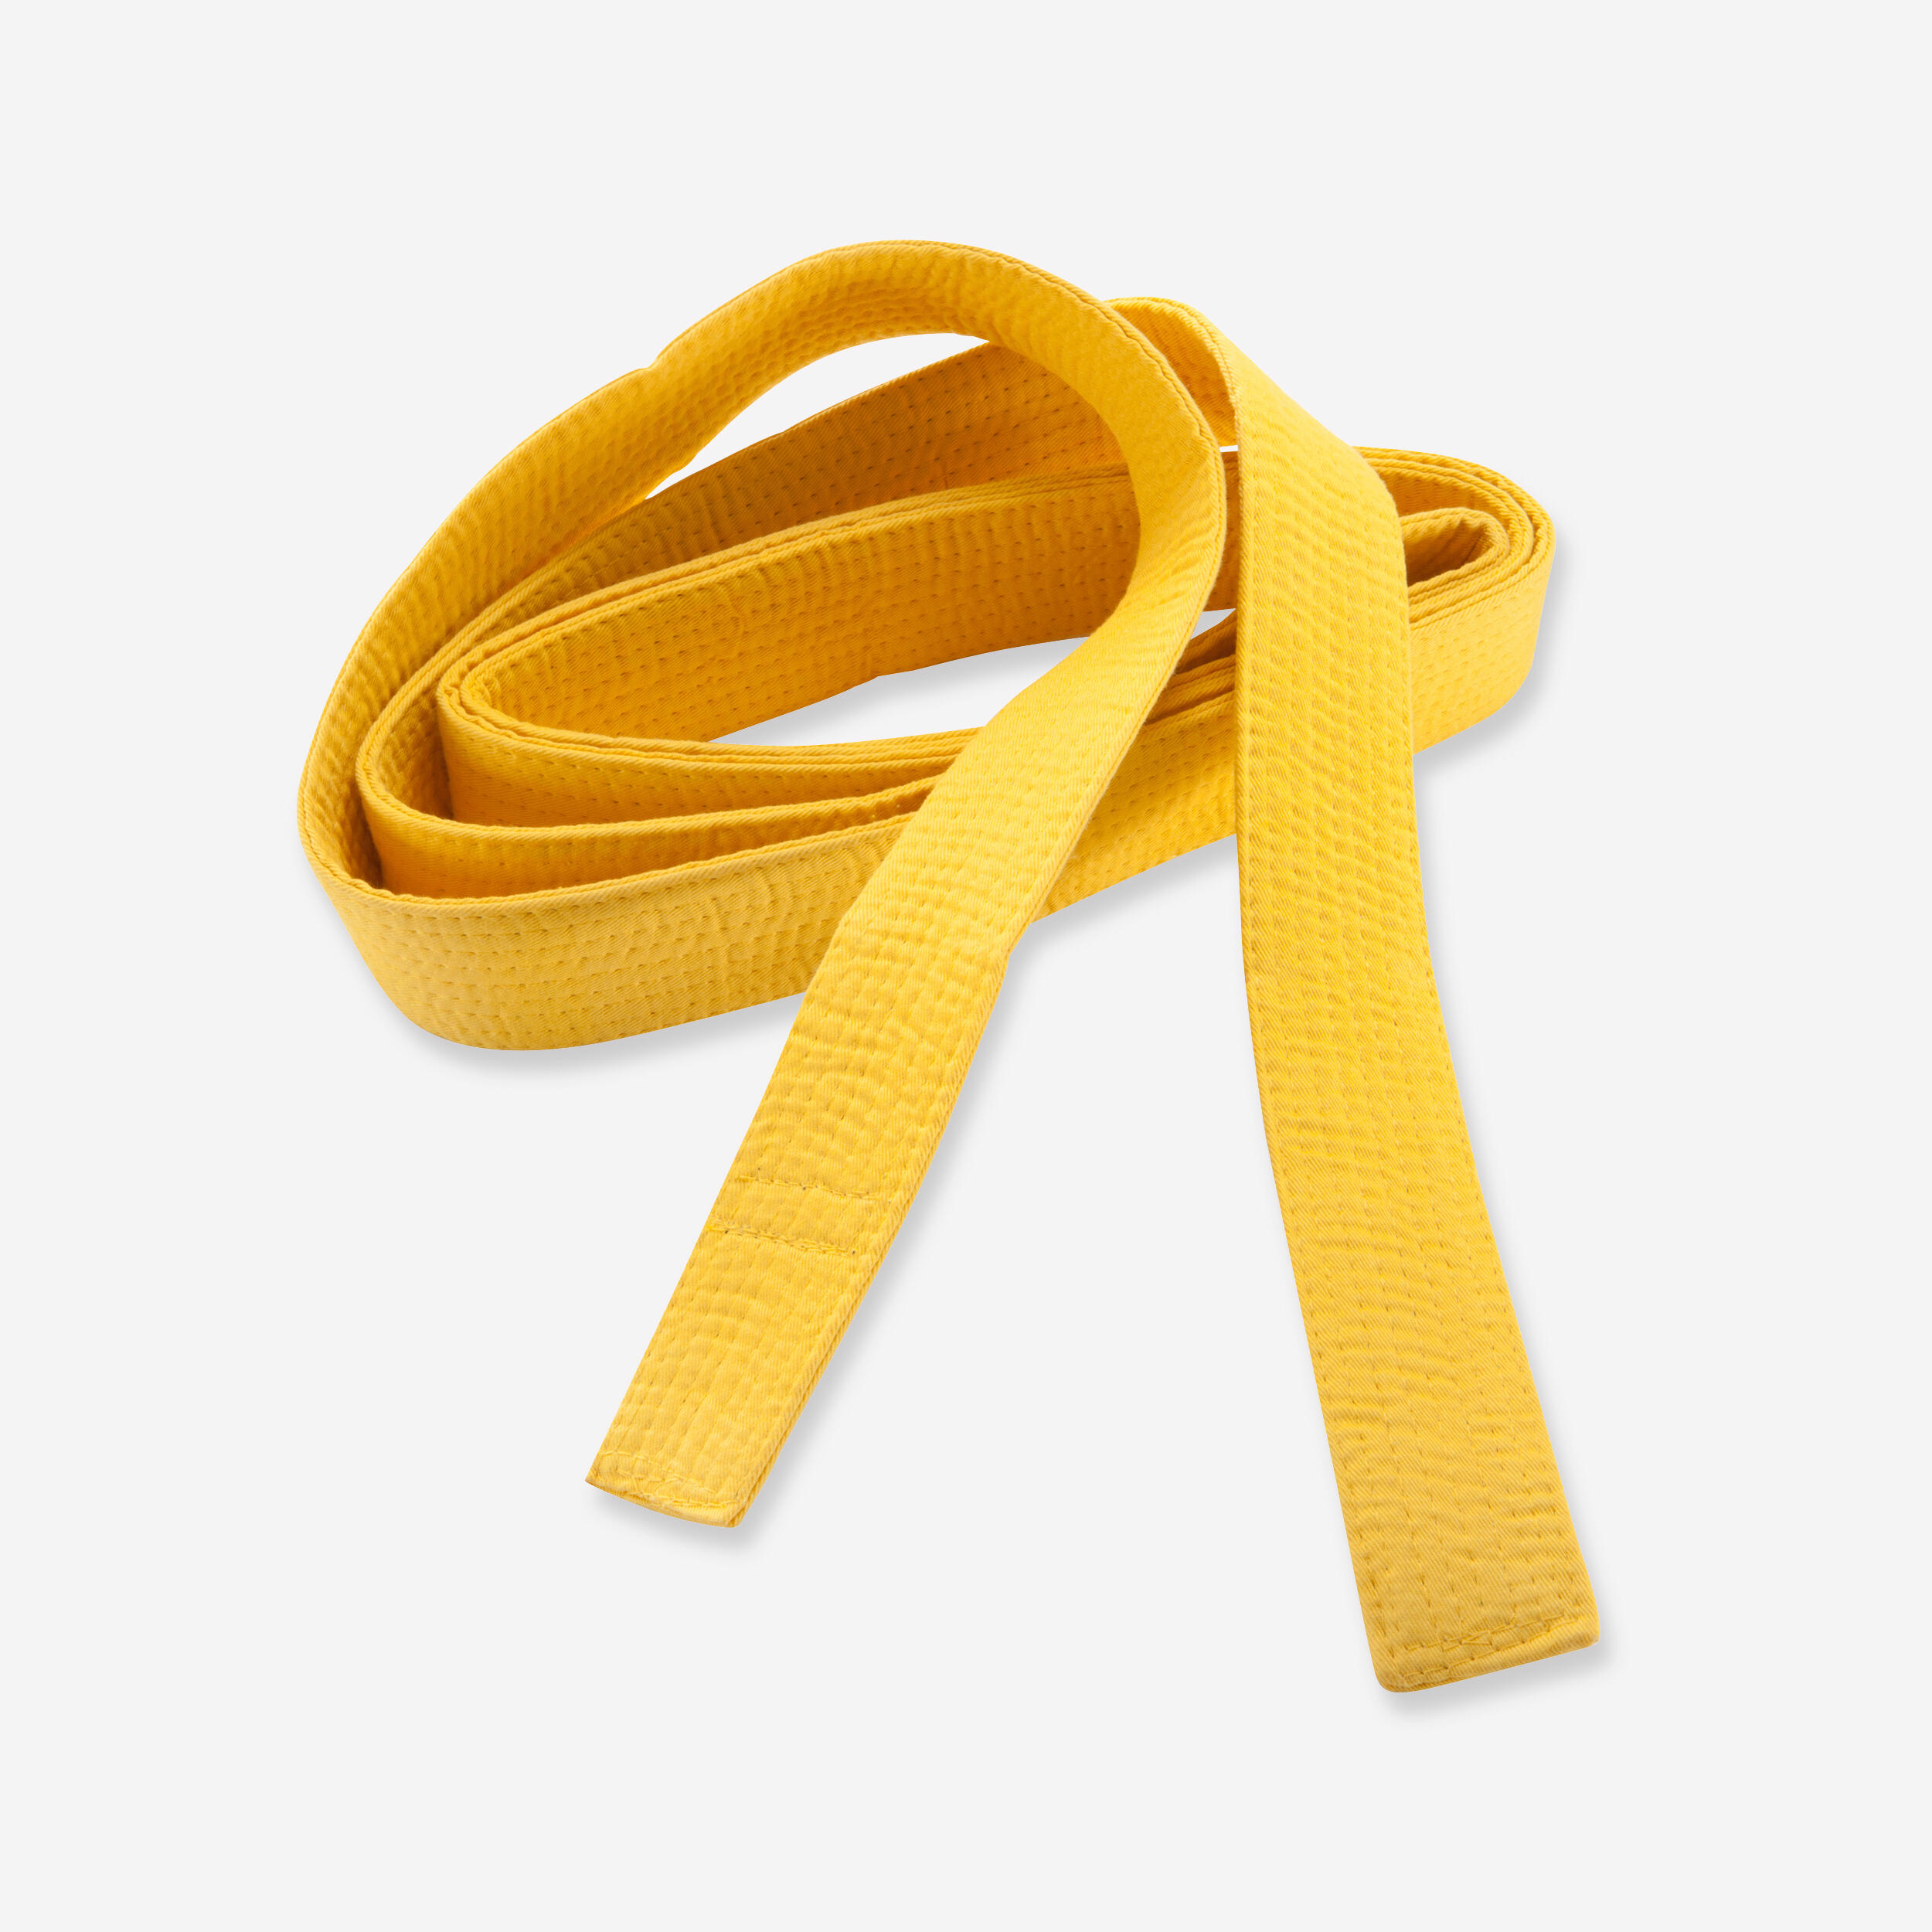 OUTSHOCK Piqué Belt 2.5 m - Yellow